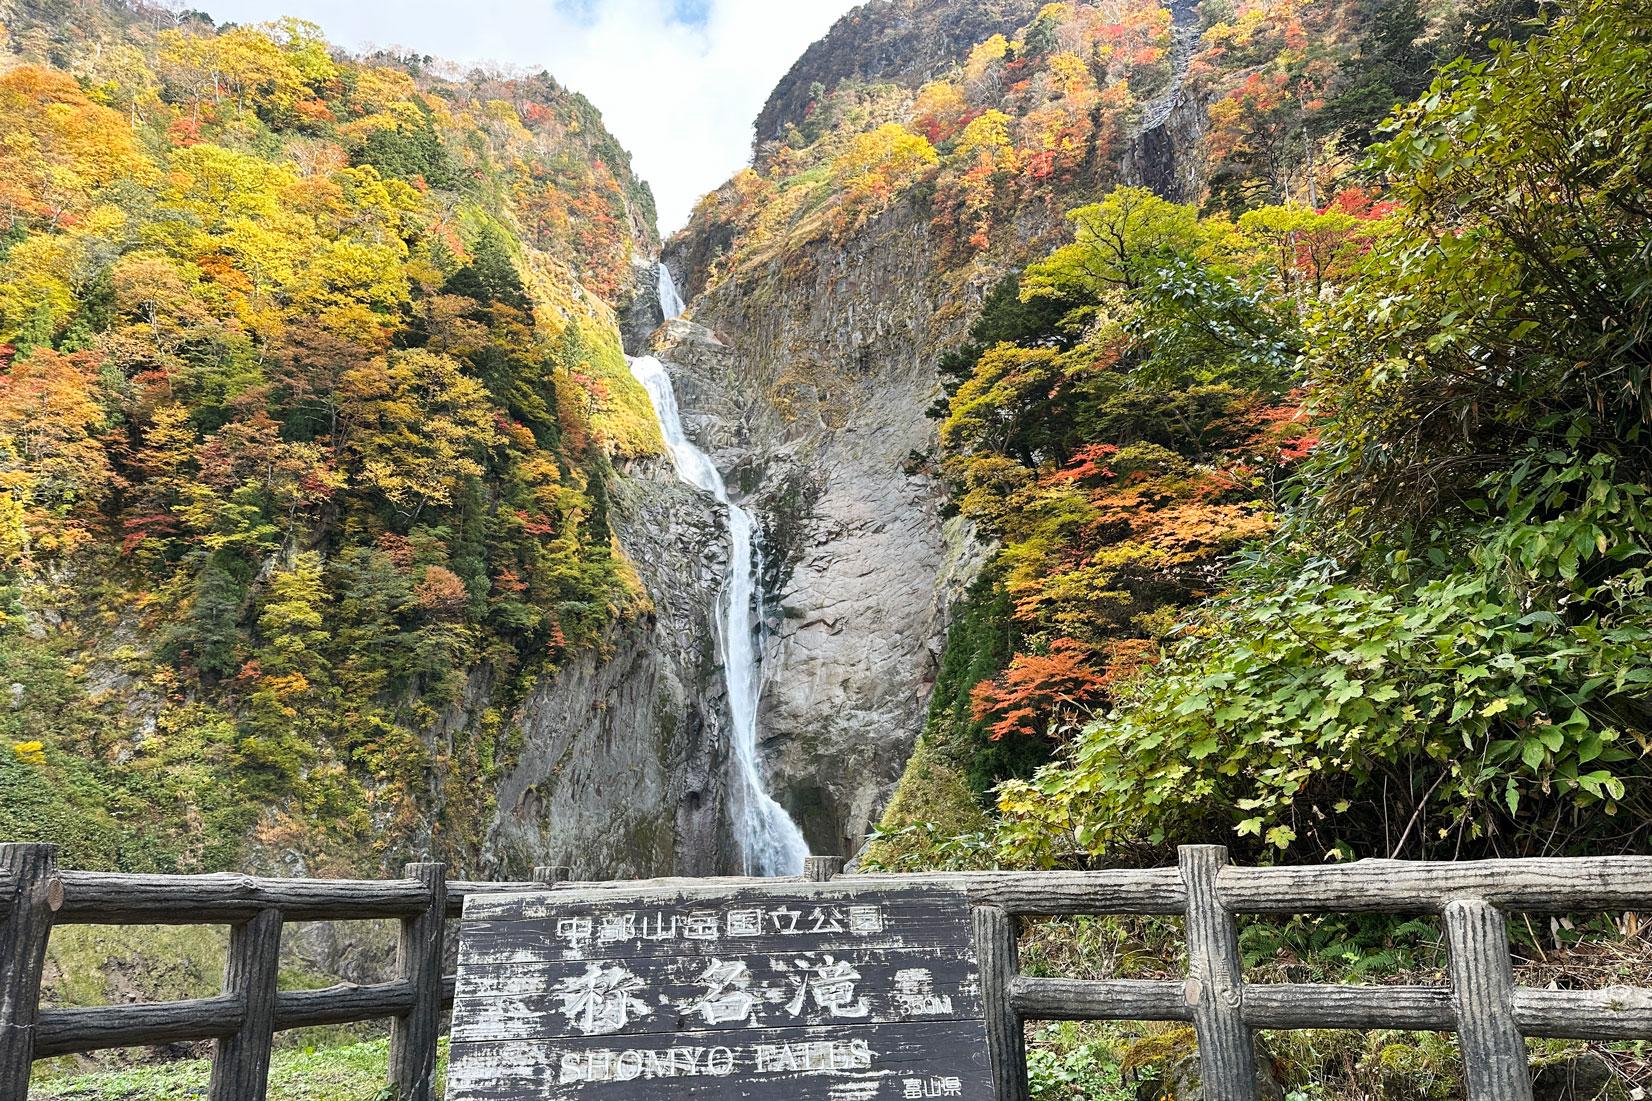 落差日本一の称名滝-1